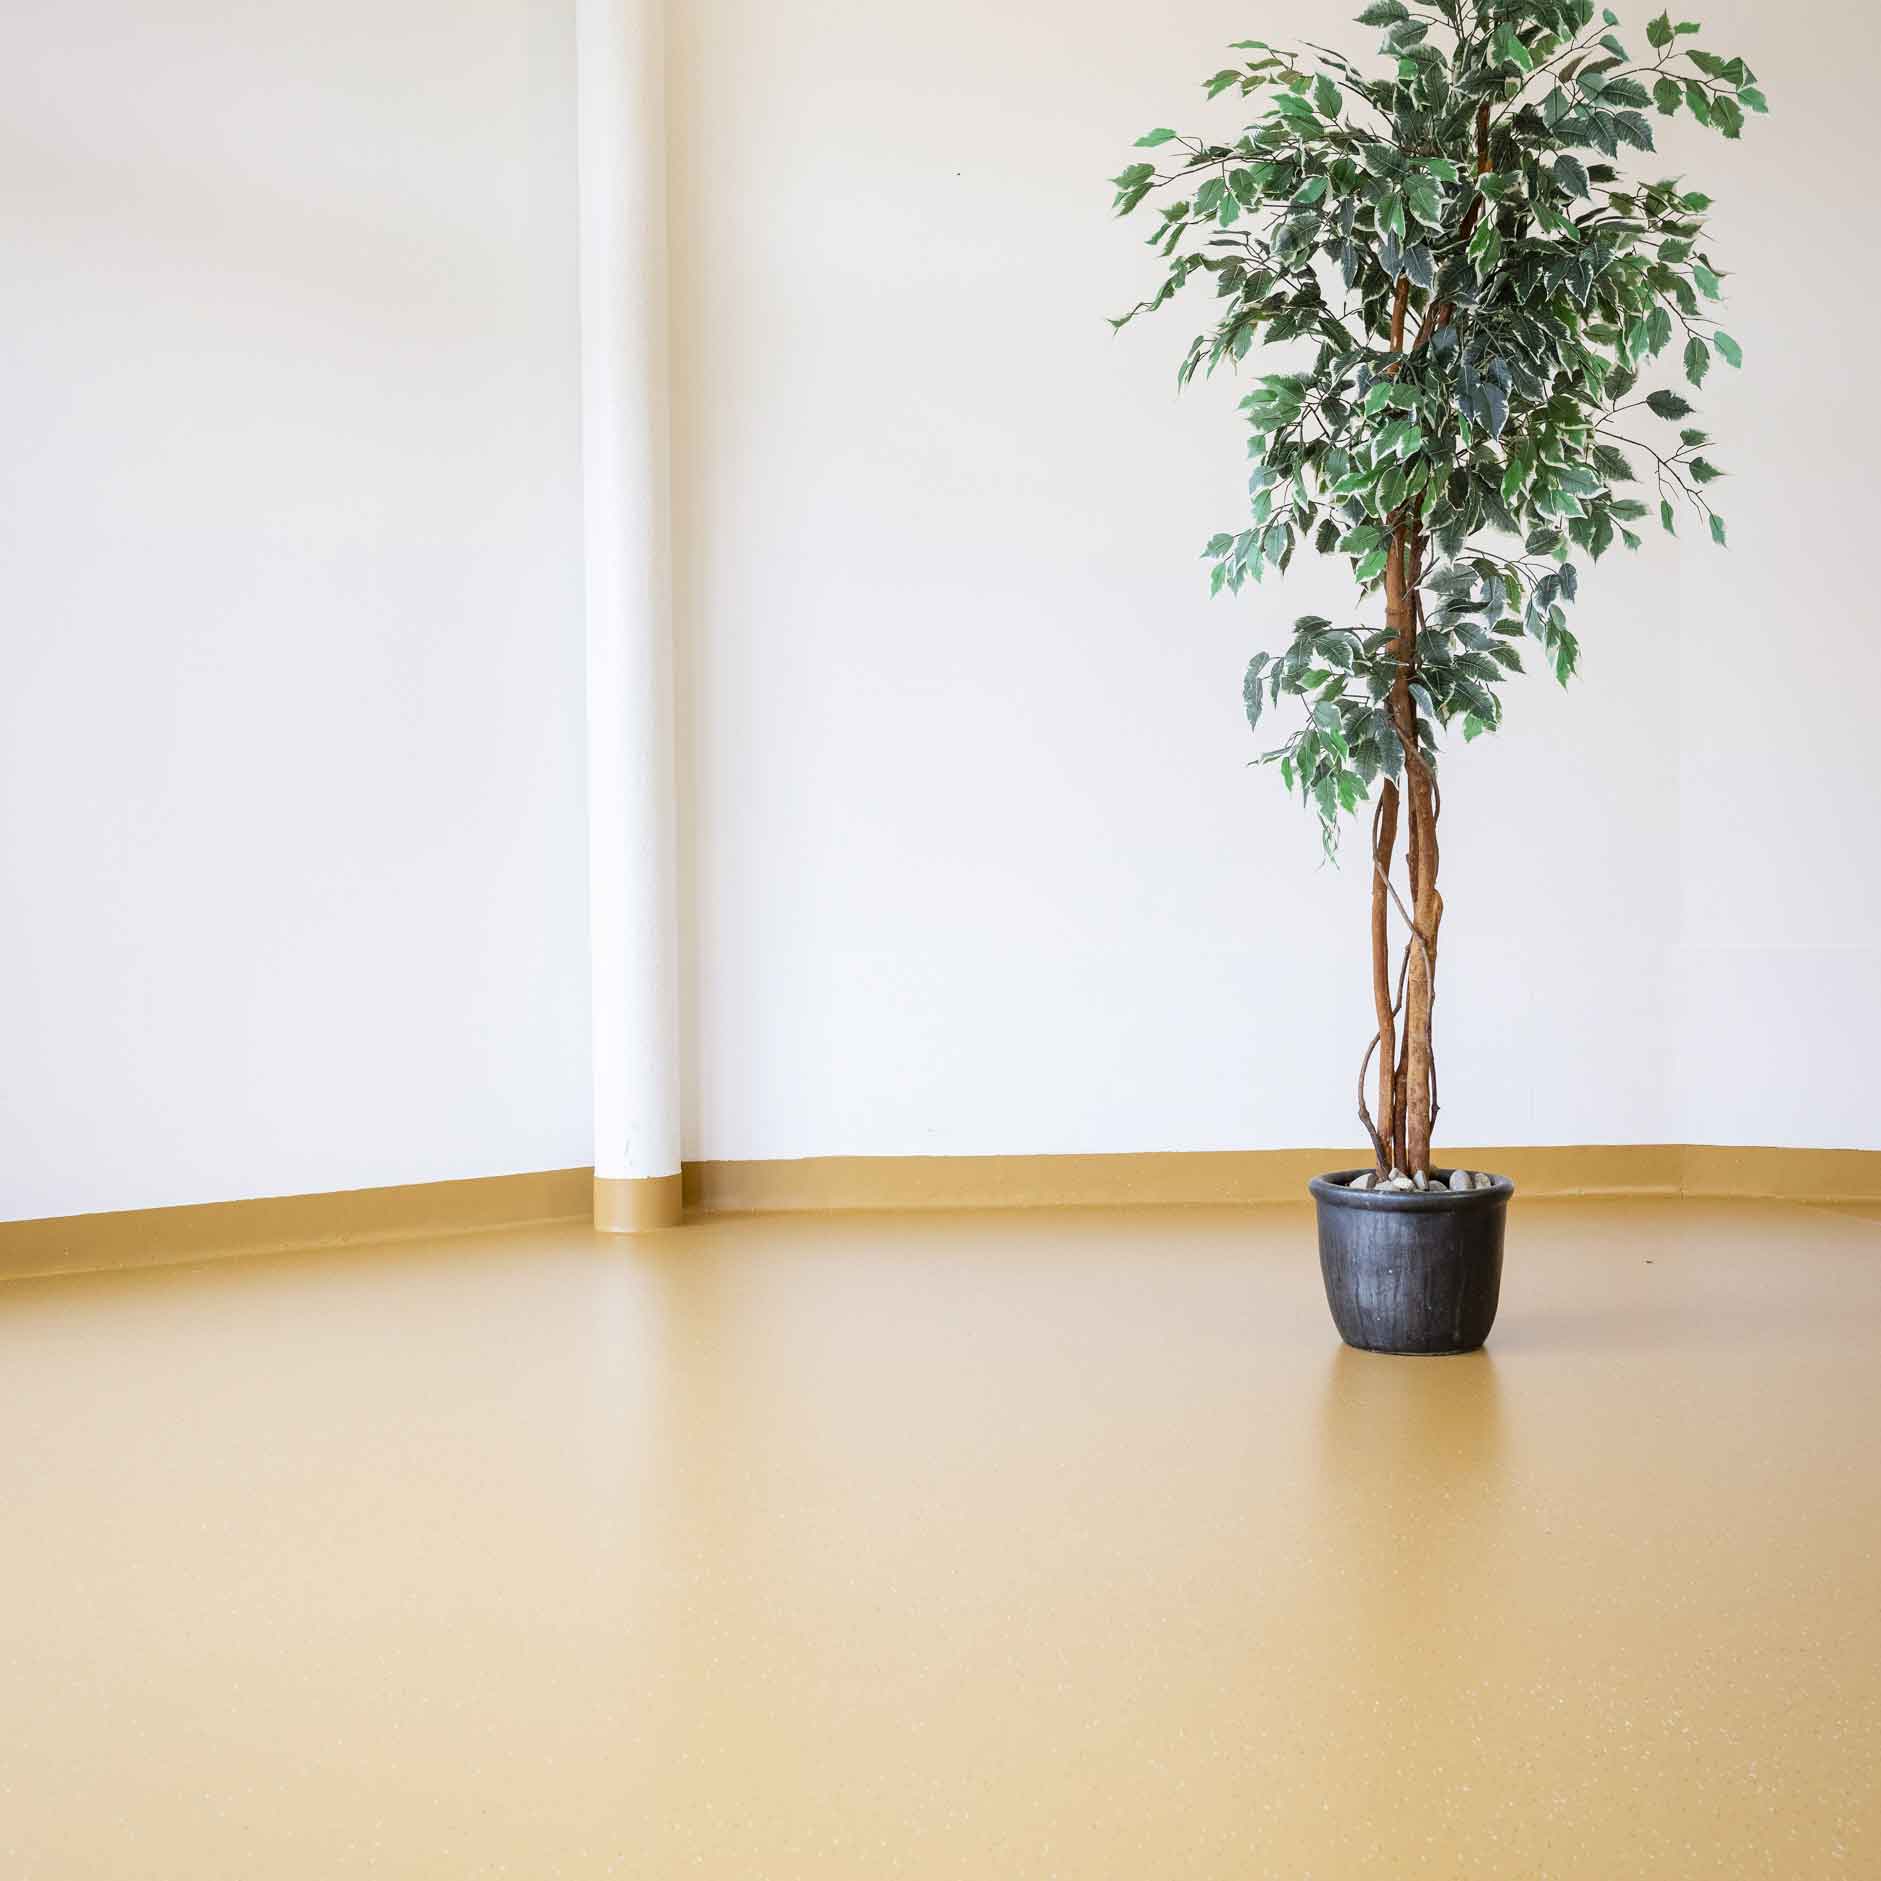 Bild zeigt frisch sanierten farbigen Kunststoffboden im Pflegeheim Altea mit grner Zimmerpflanze.